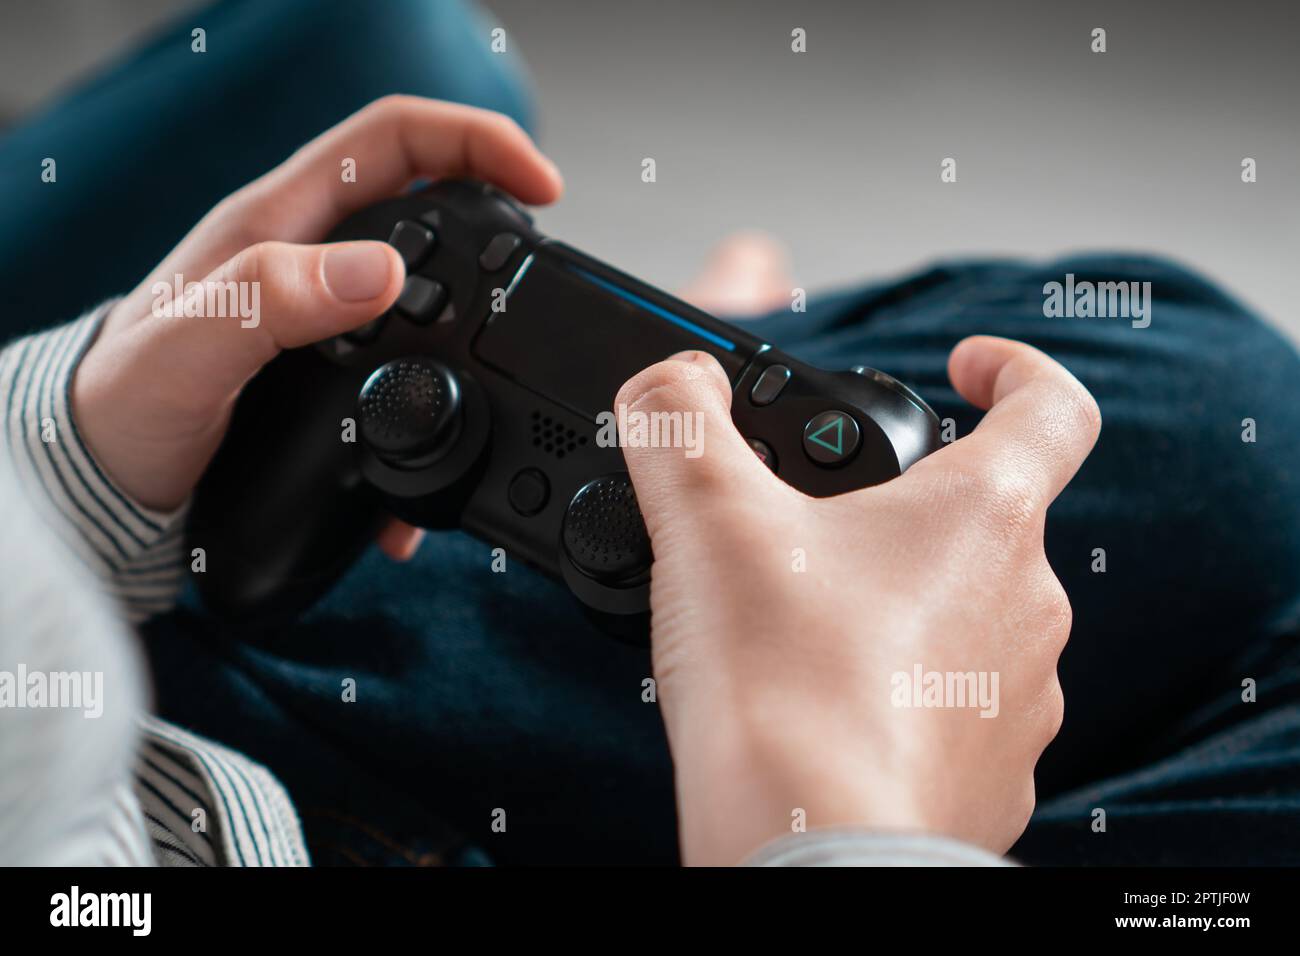 Enfant adolescent méconnaissable assis à la maison, tenant une manette de jeu noire, jouant à des jeux vidéo sur la console